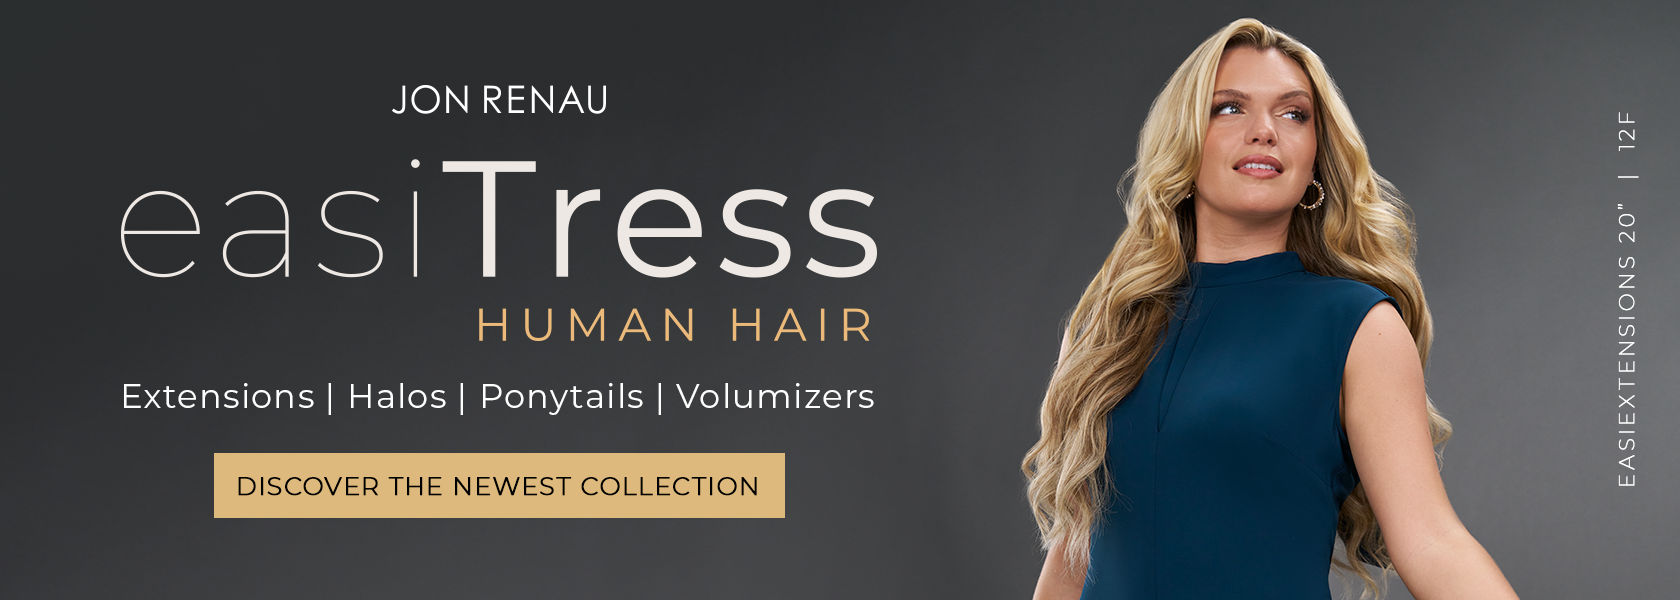 easiTress Human Hair by Jon Renau